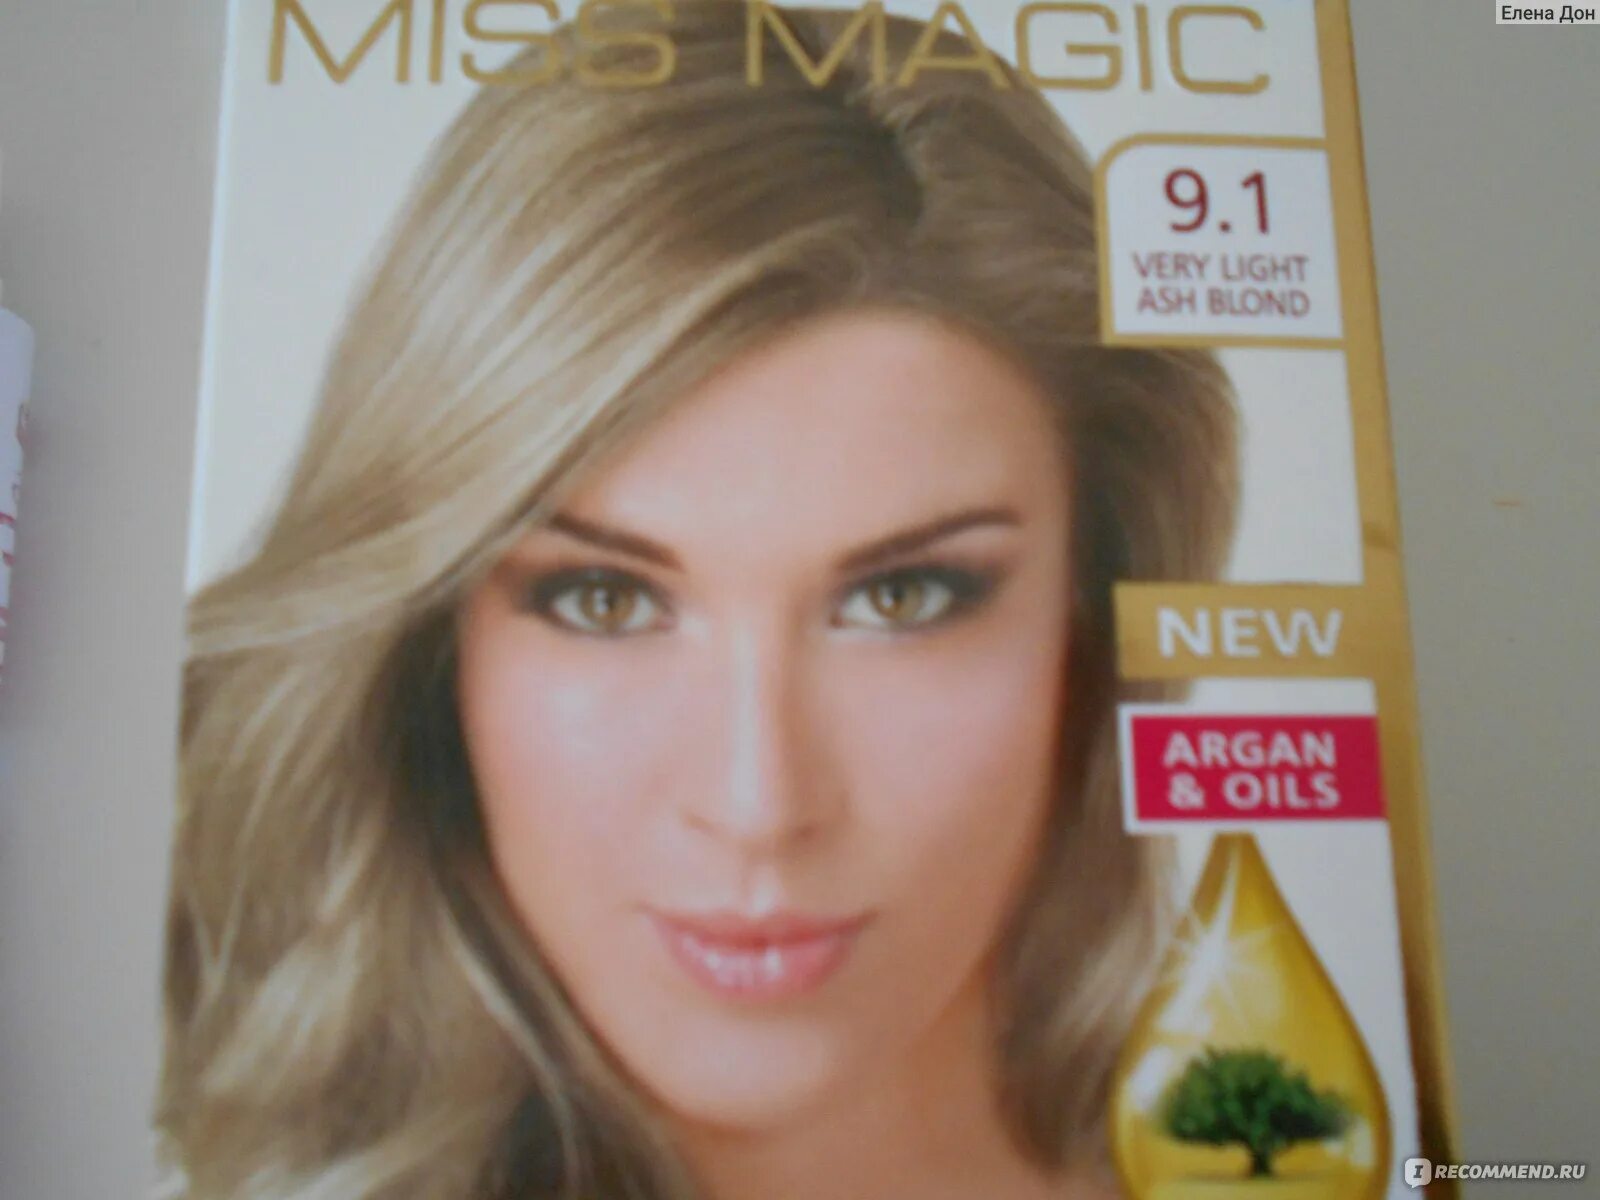 Miss Magic 9.1 блондин пепельный. Miss Magic краска 9.1. Miss Magic Luxe Colors 9.1 - блондин пепельный. "Miss Magic" Luxe Colors 122/7.1 - пепельно-русый. Стойкая пепельная краска для волос